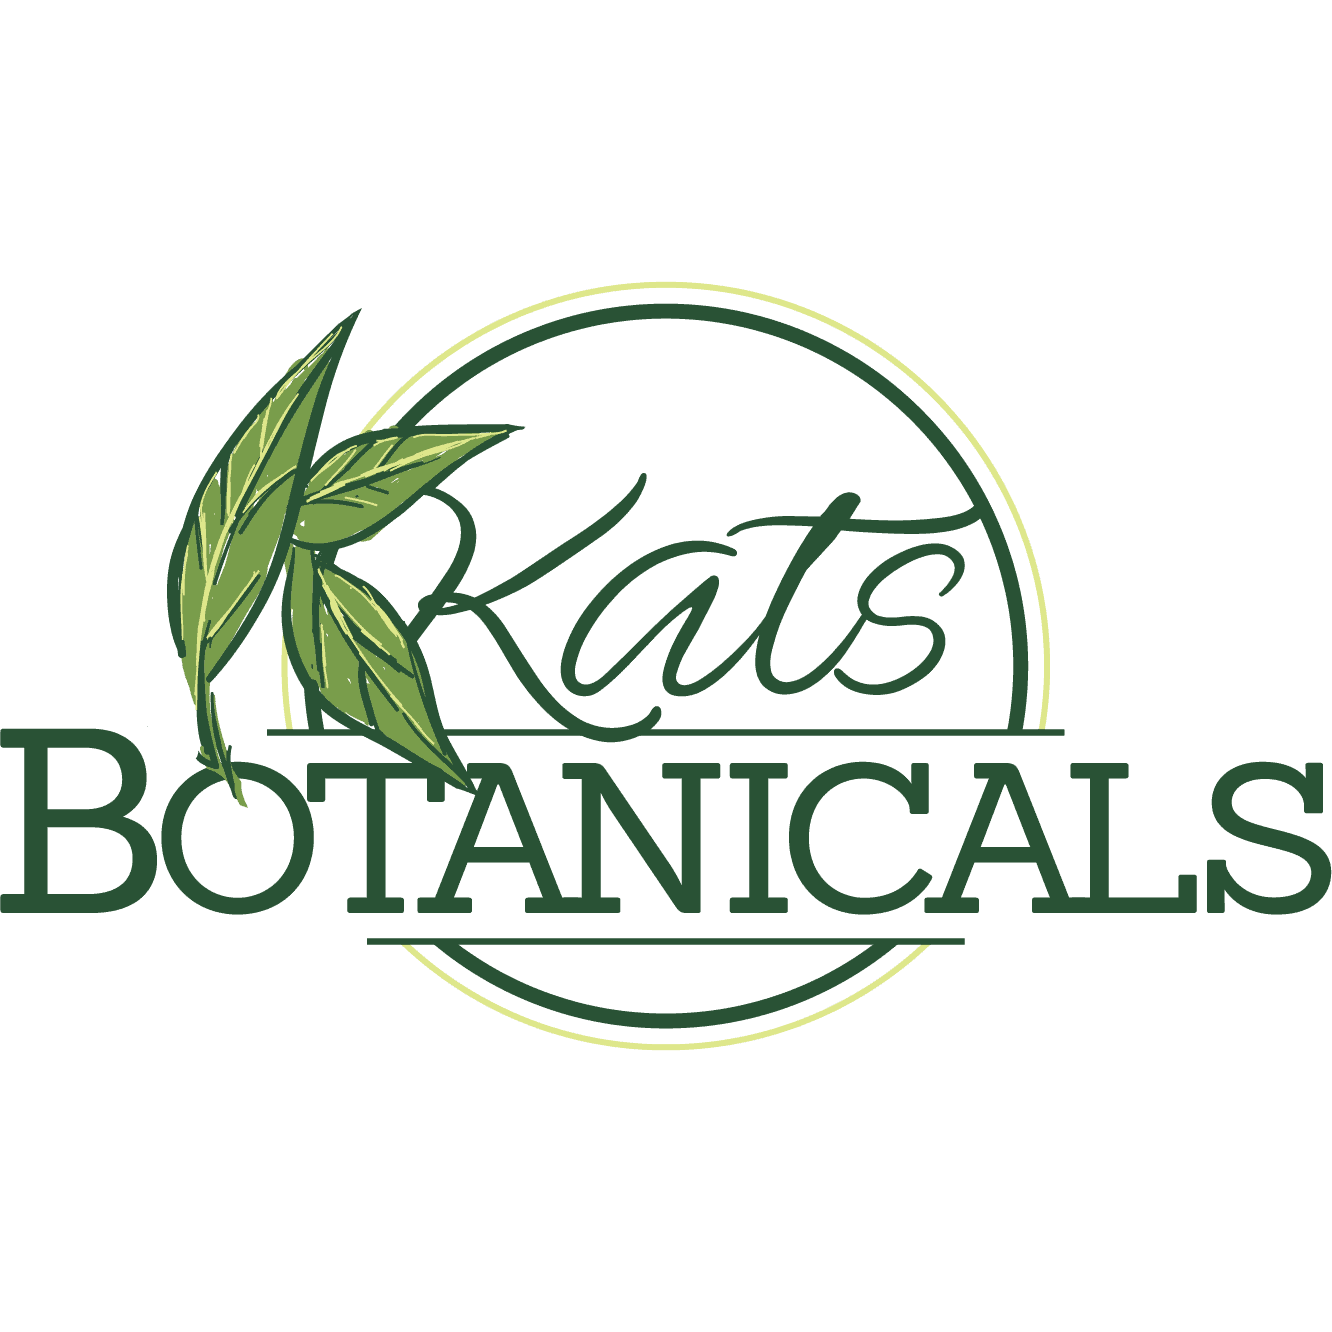 Kat's Botanicals promos and coupon codes